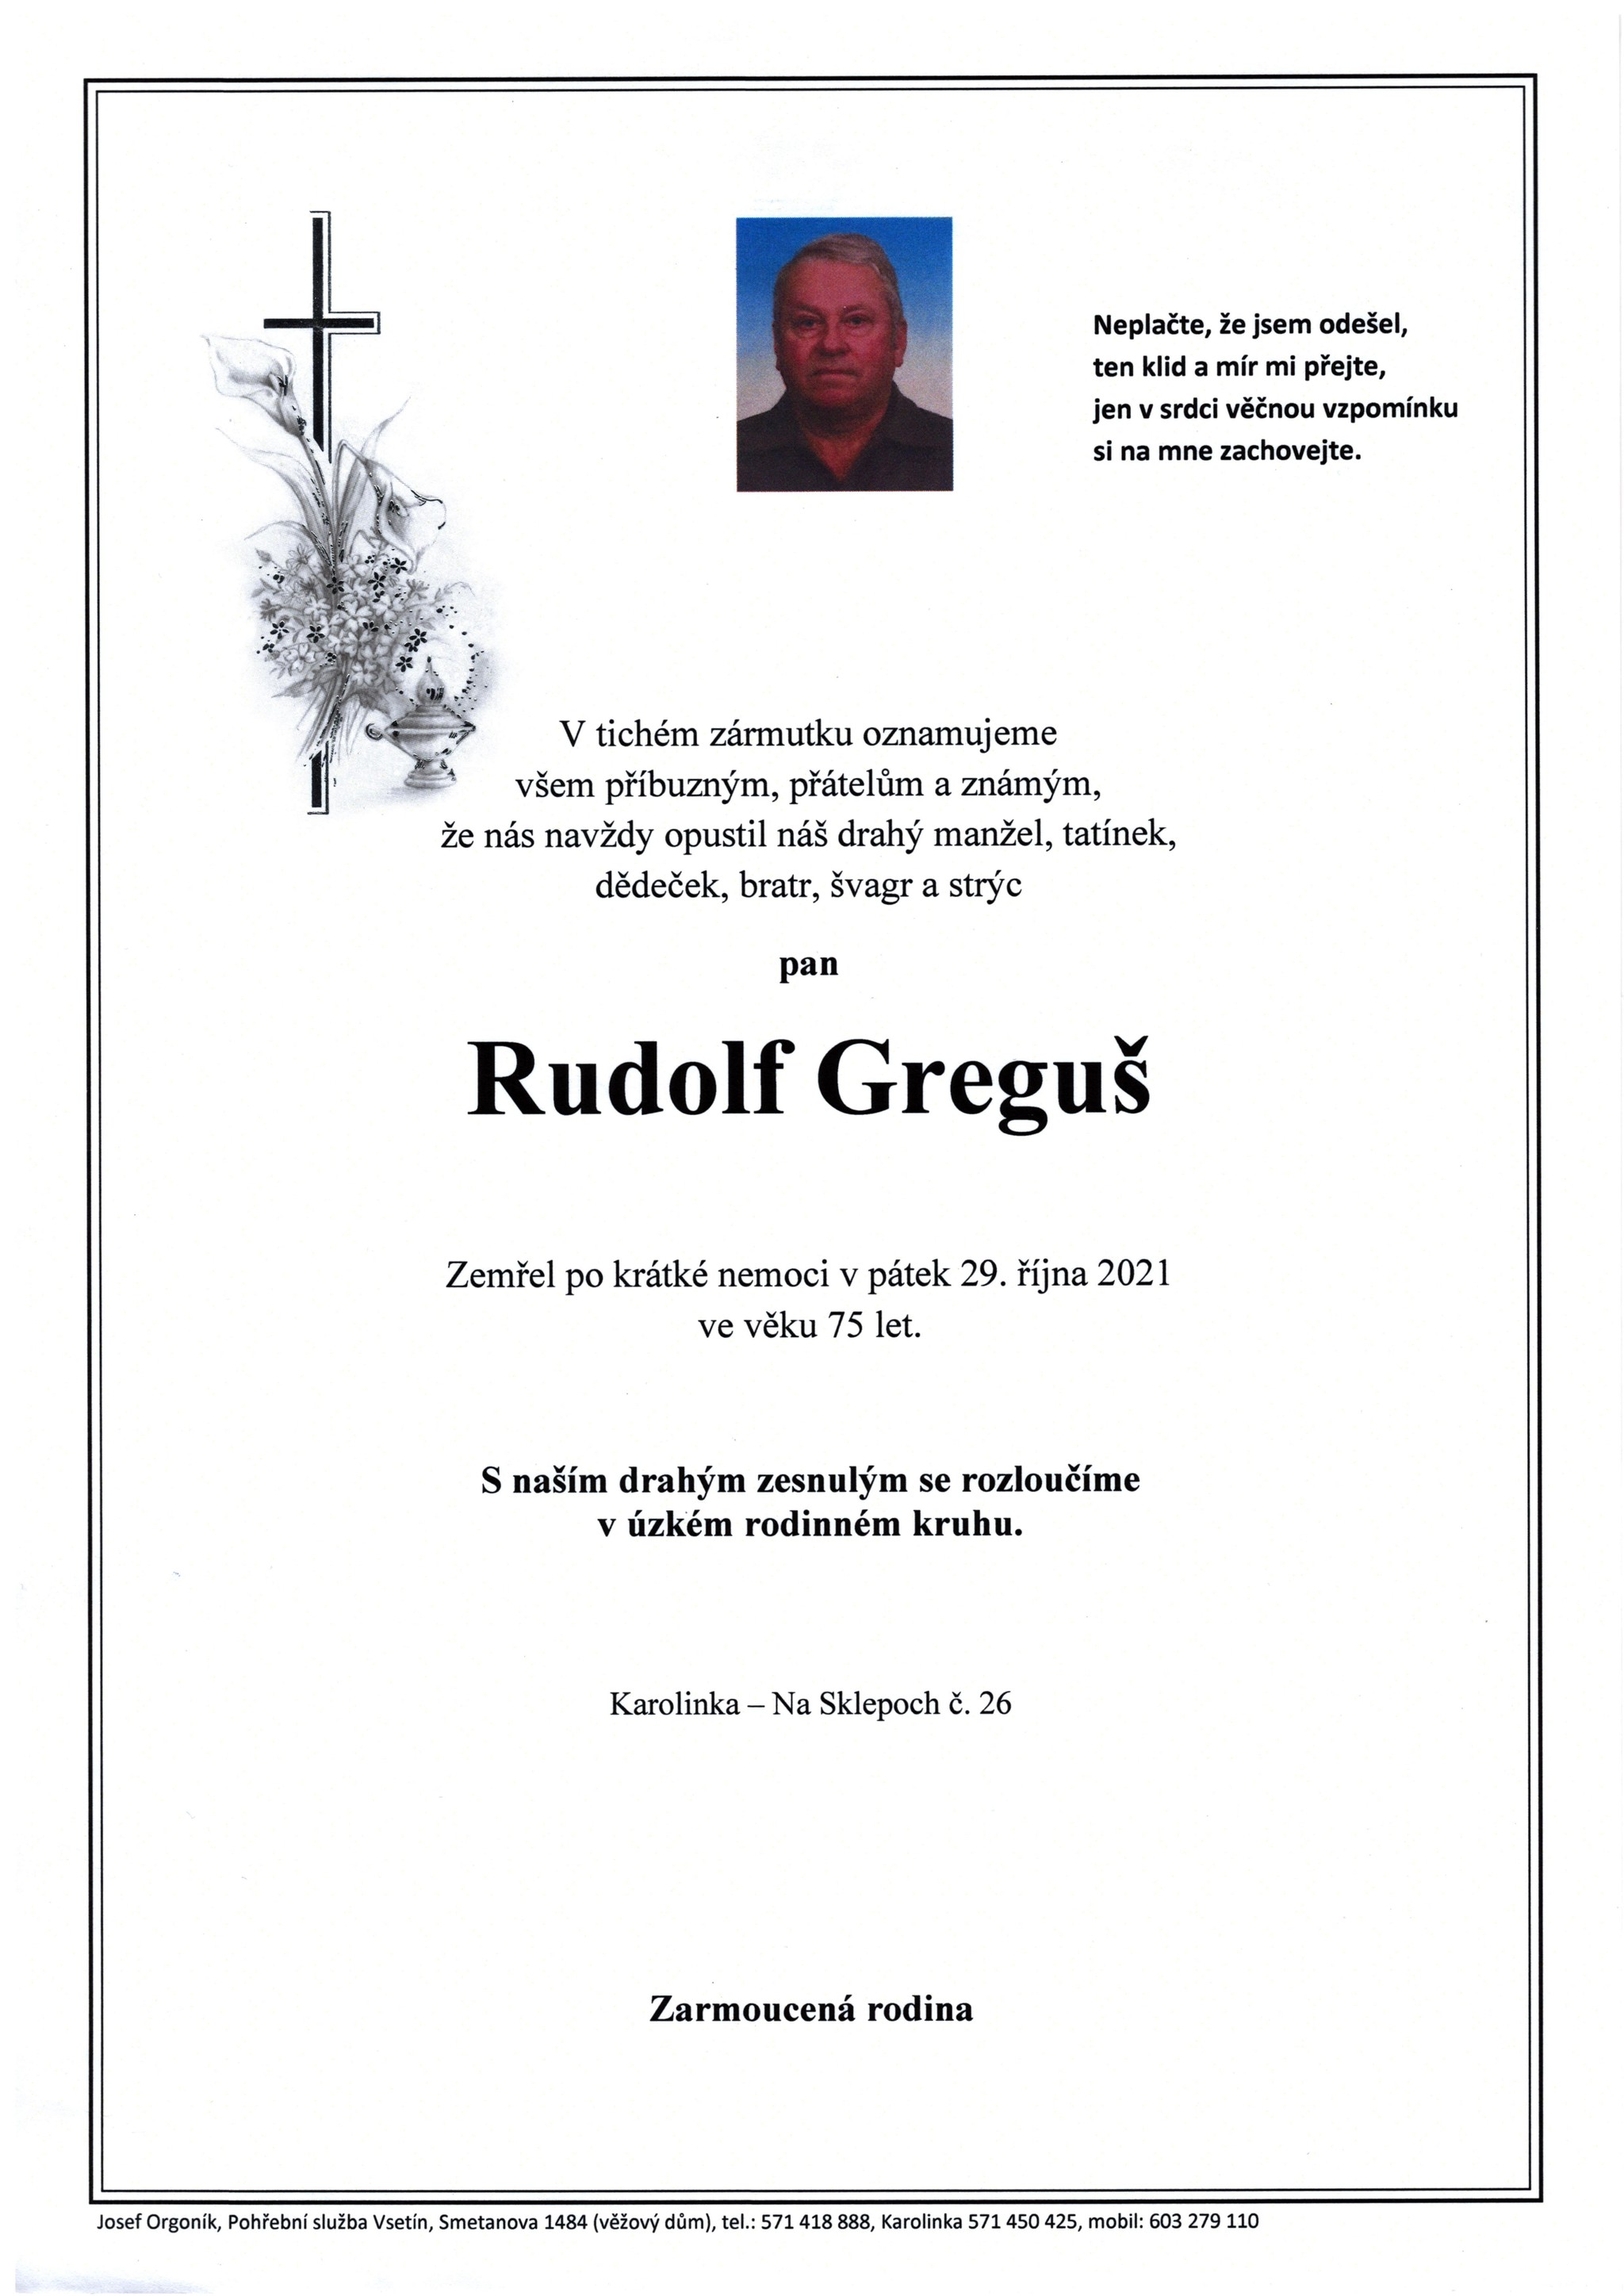 Rudolf Greguš